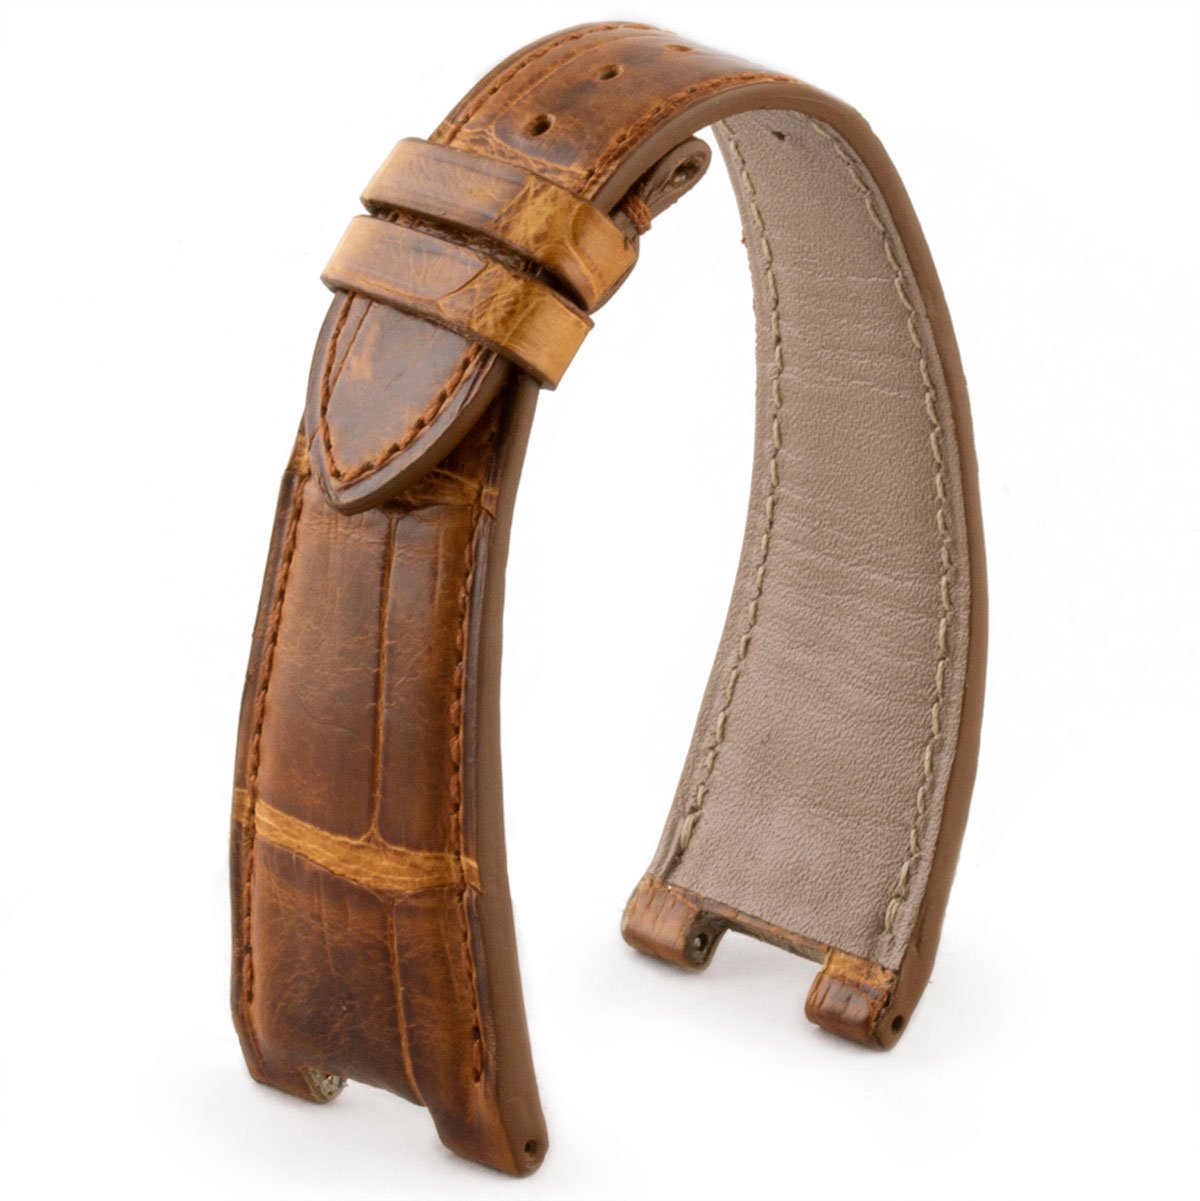 Patek Philippe Nautilus - Bracelet de montre cuir - Alligator tannage spécial waxé (marron / gris / miel / bleu) - watch band leather strap - ABP Concept -